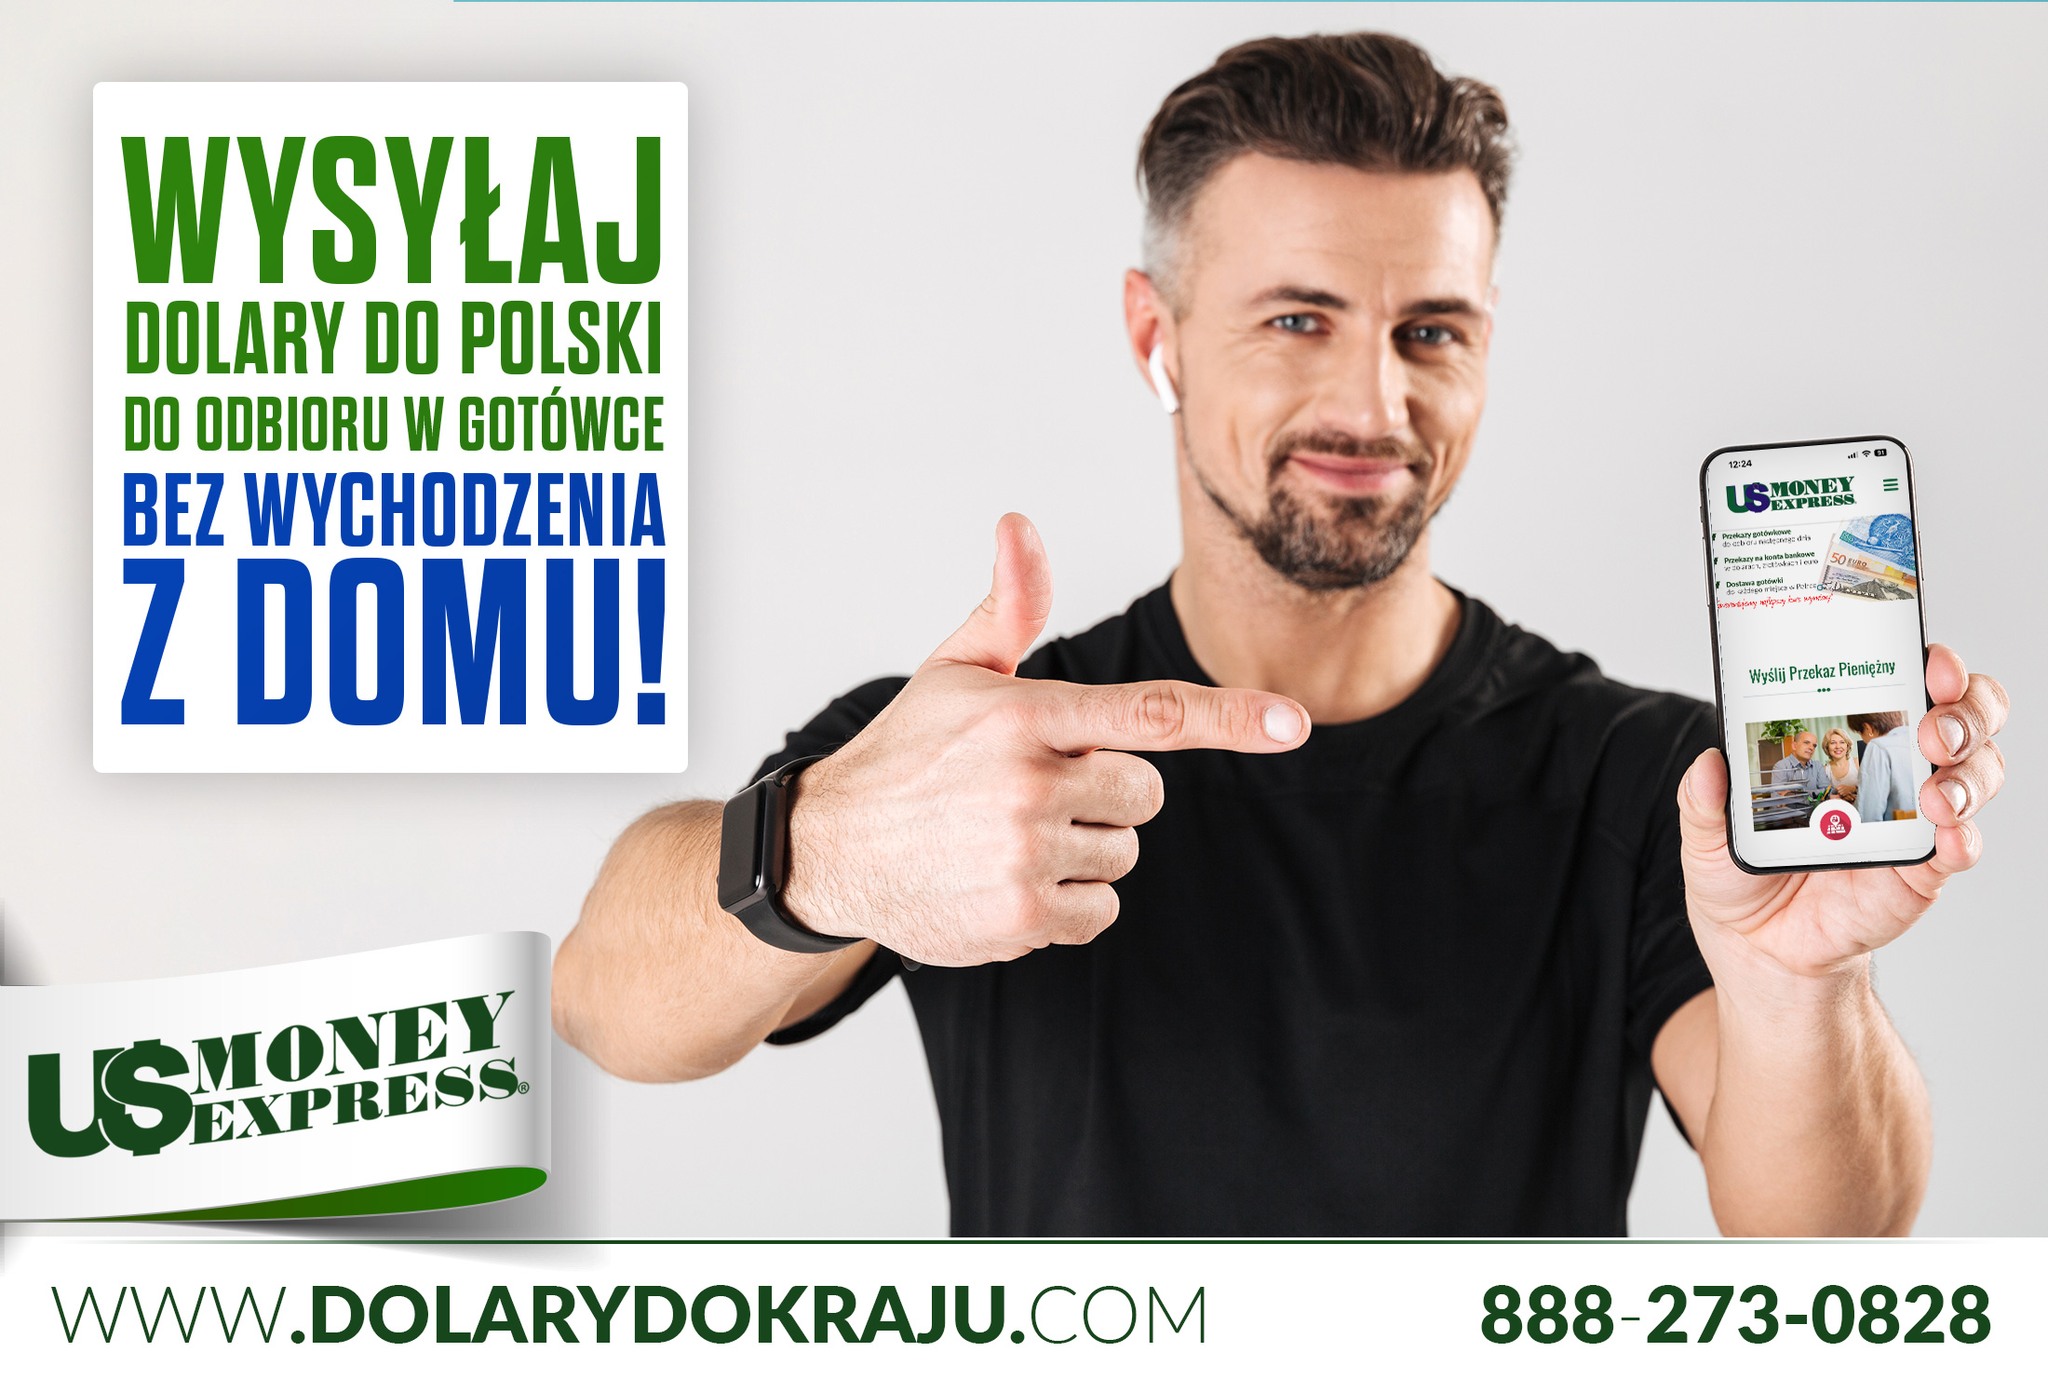 Wysyłaj pieniądze z USA do Polski bez wychodzenia z domu